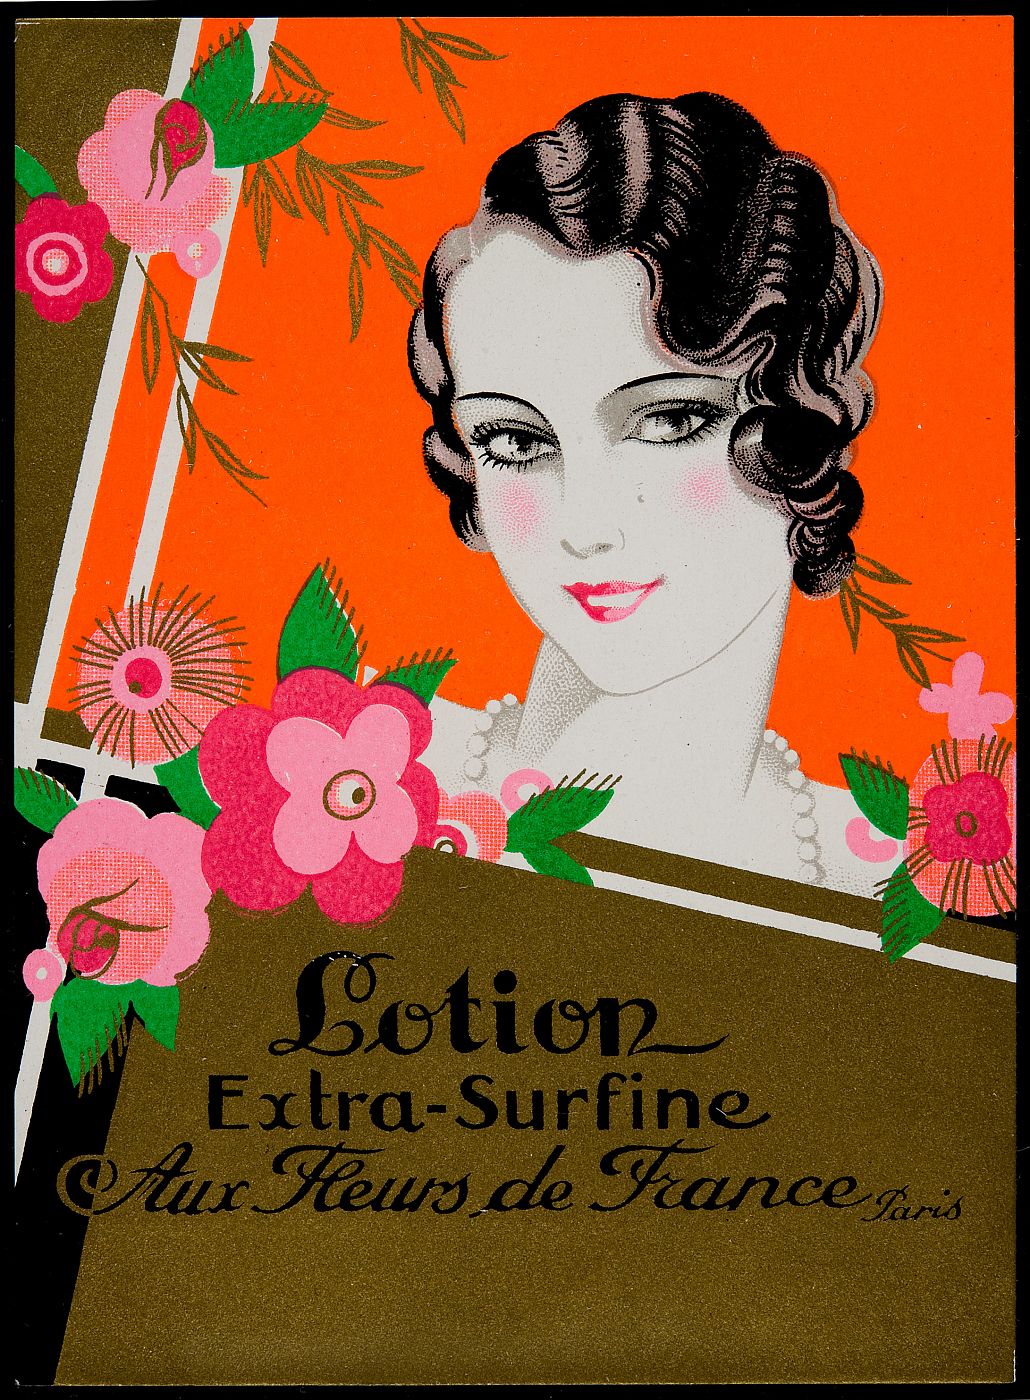 Etiqueta comercial del perfume 'Aux Fleurs de France' (1920)